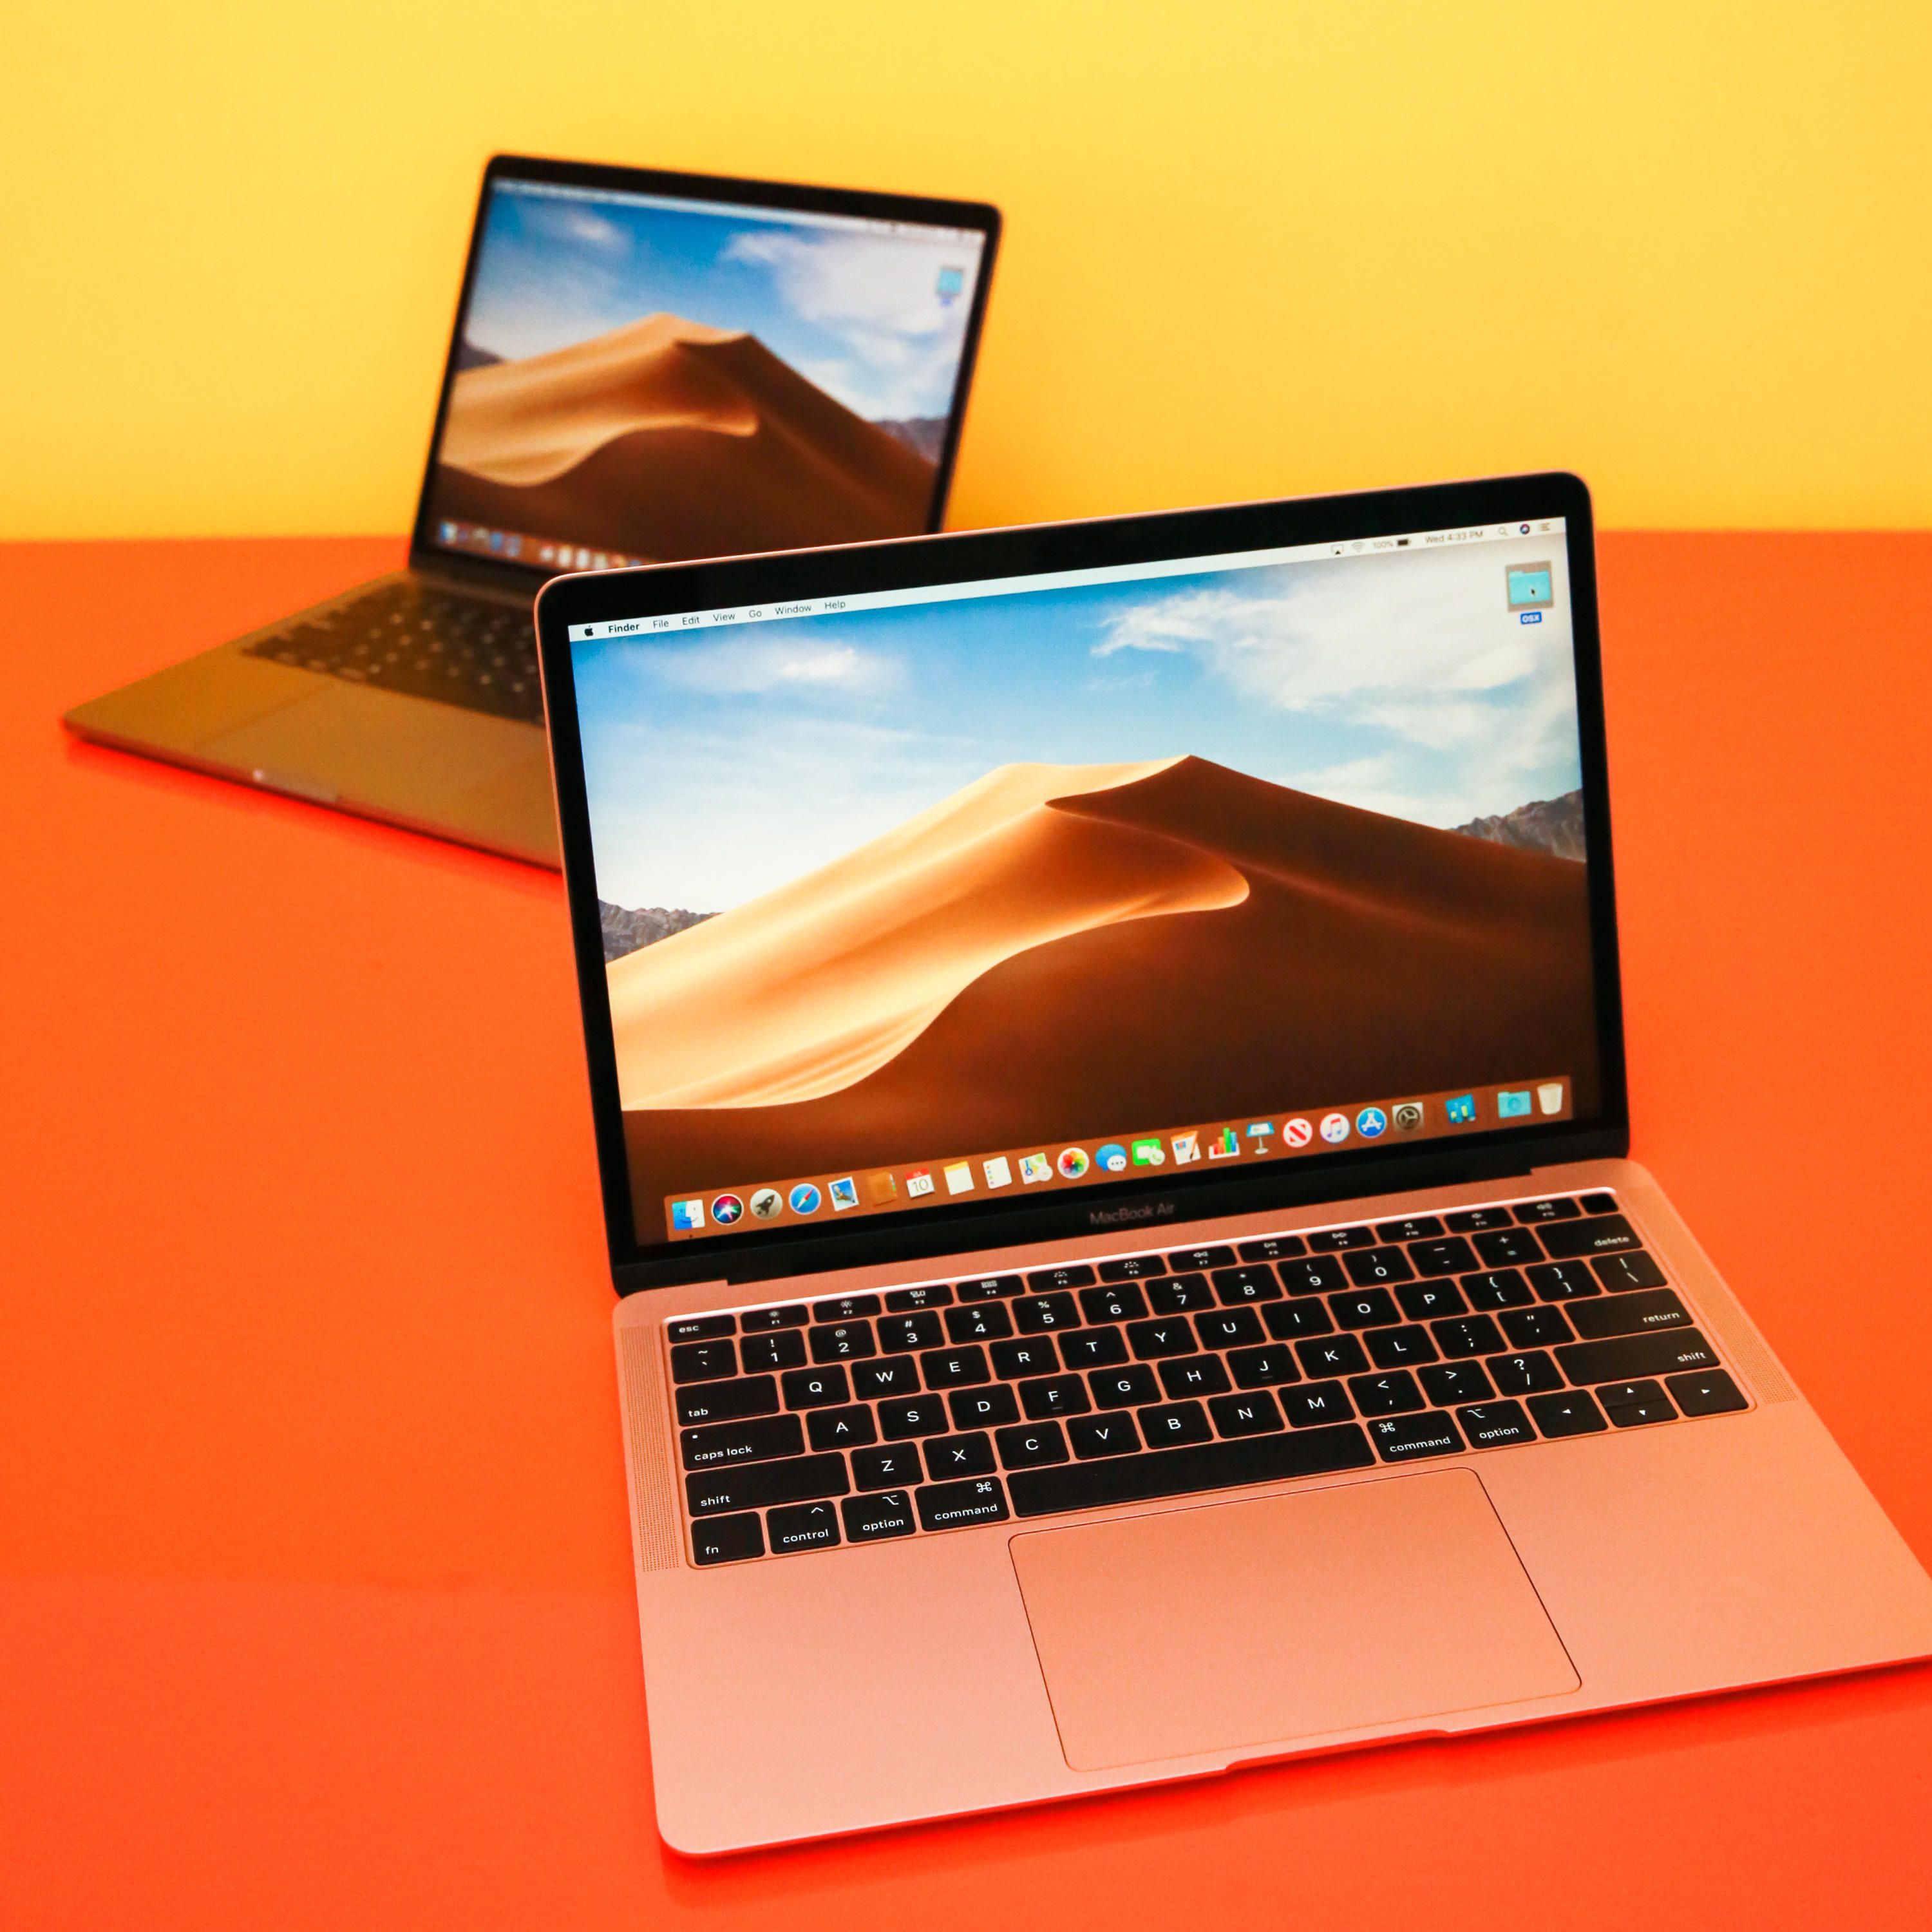 Apple El MacBook Air, basado en el sistema ARM, se lanzará a 799 dólares con el MacBook Pro 13 a